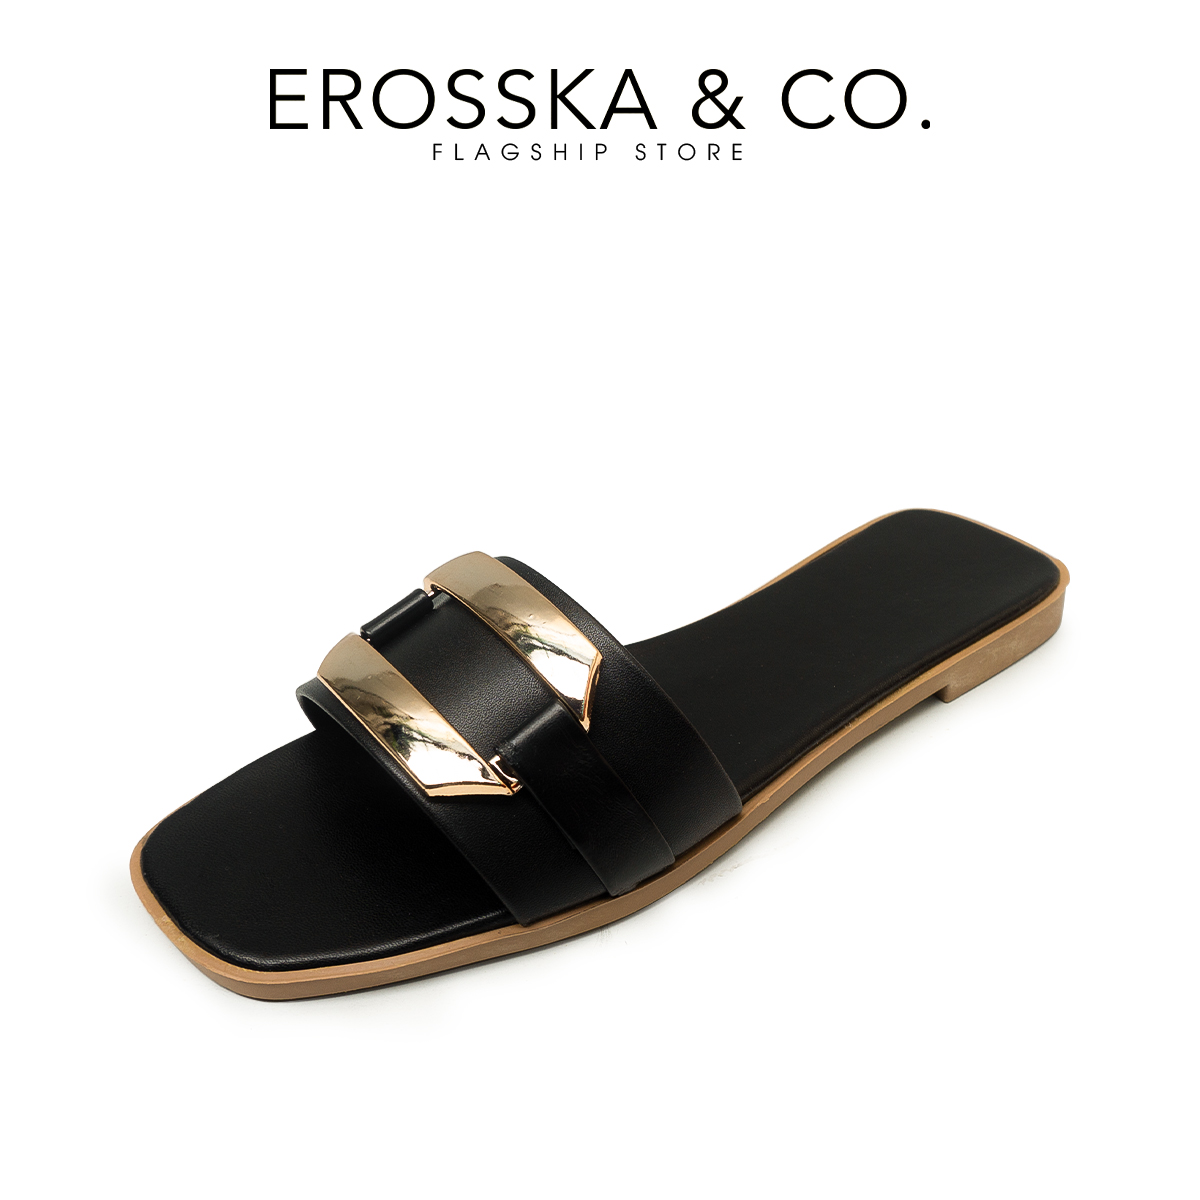 Dép nữ thời trang Erosska 2022 quai ngang phối khóa màu bò _ DE053